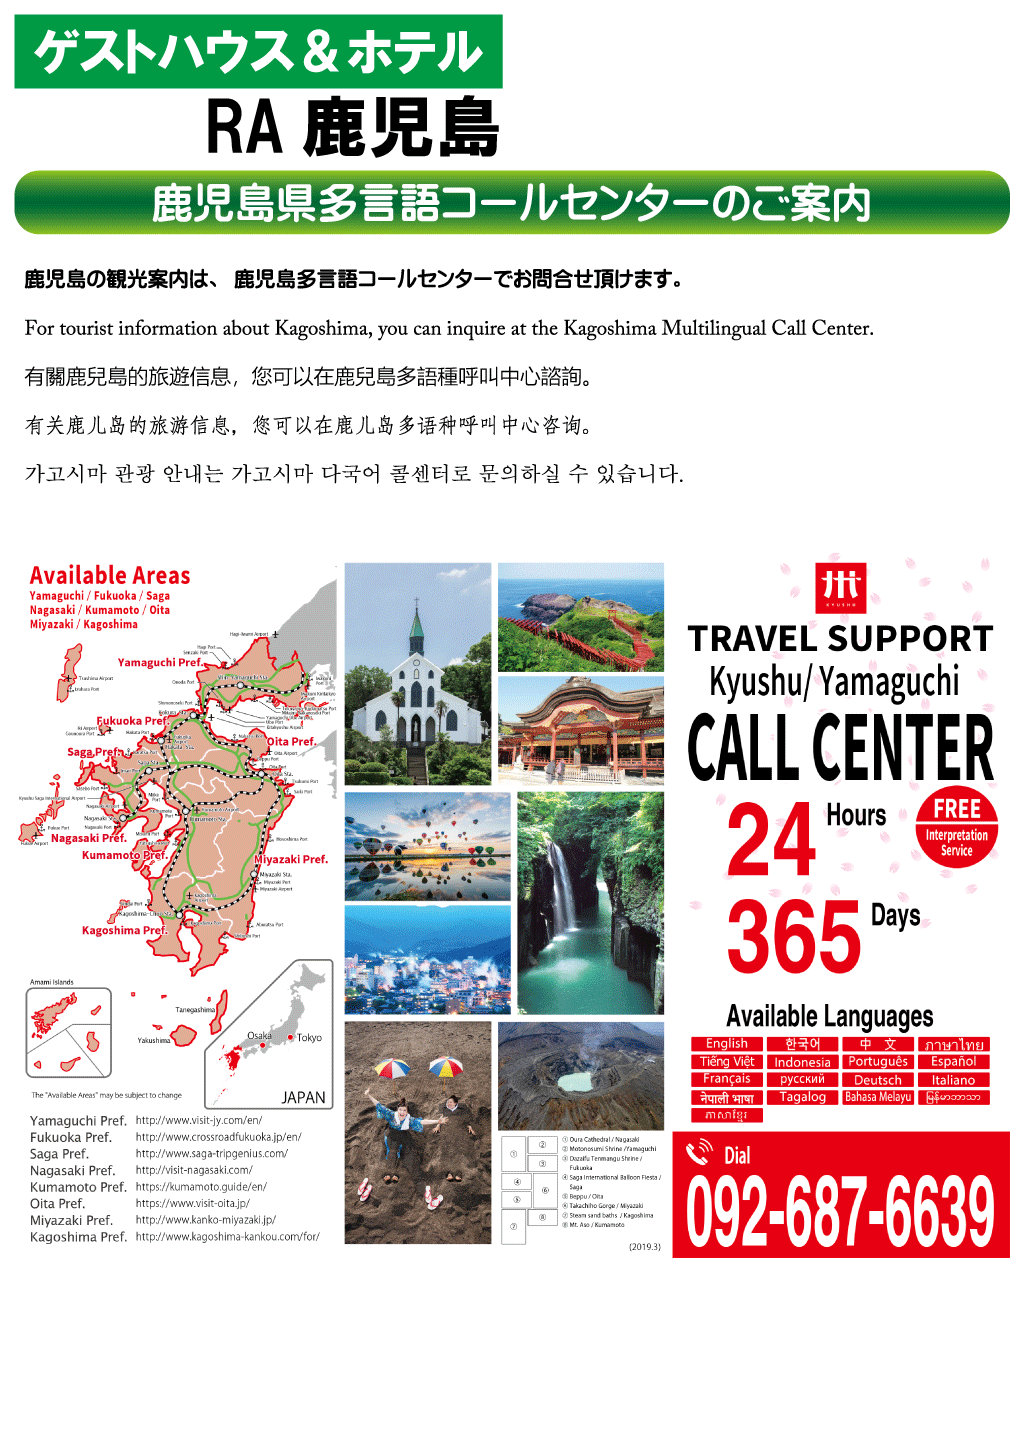 ゲストハウス＆ホテルRA鹿児島 鹿児島県多言語コールセンターのご案内